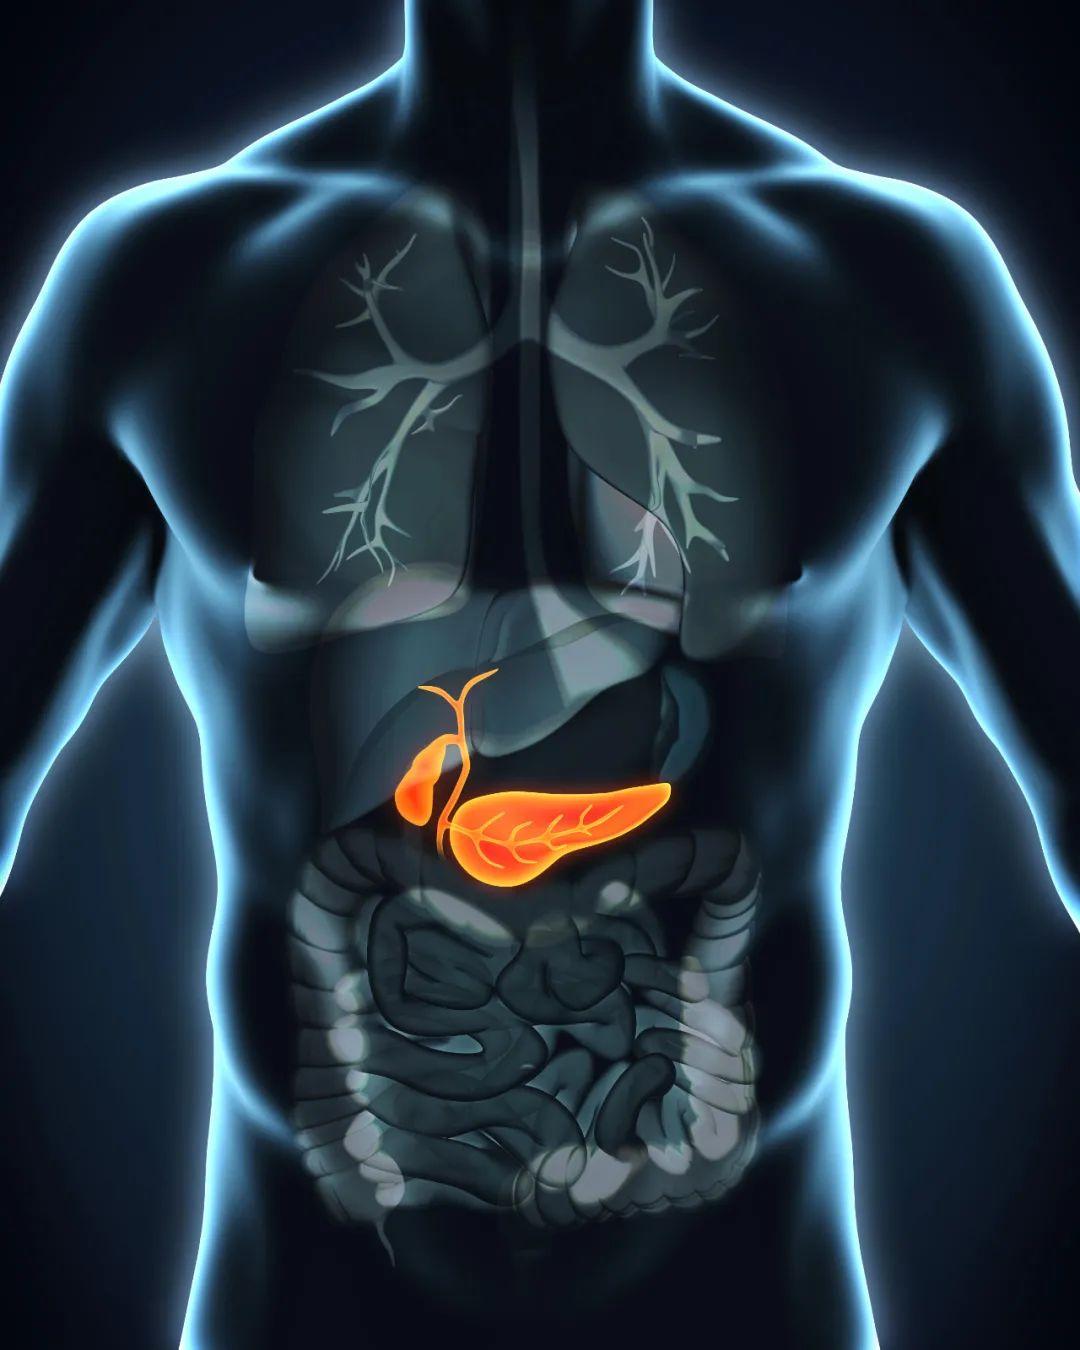 人体胆囊位置图片